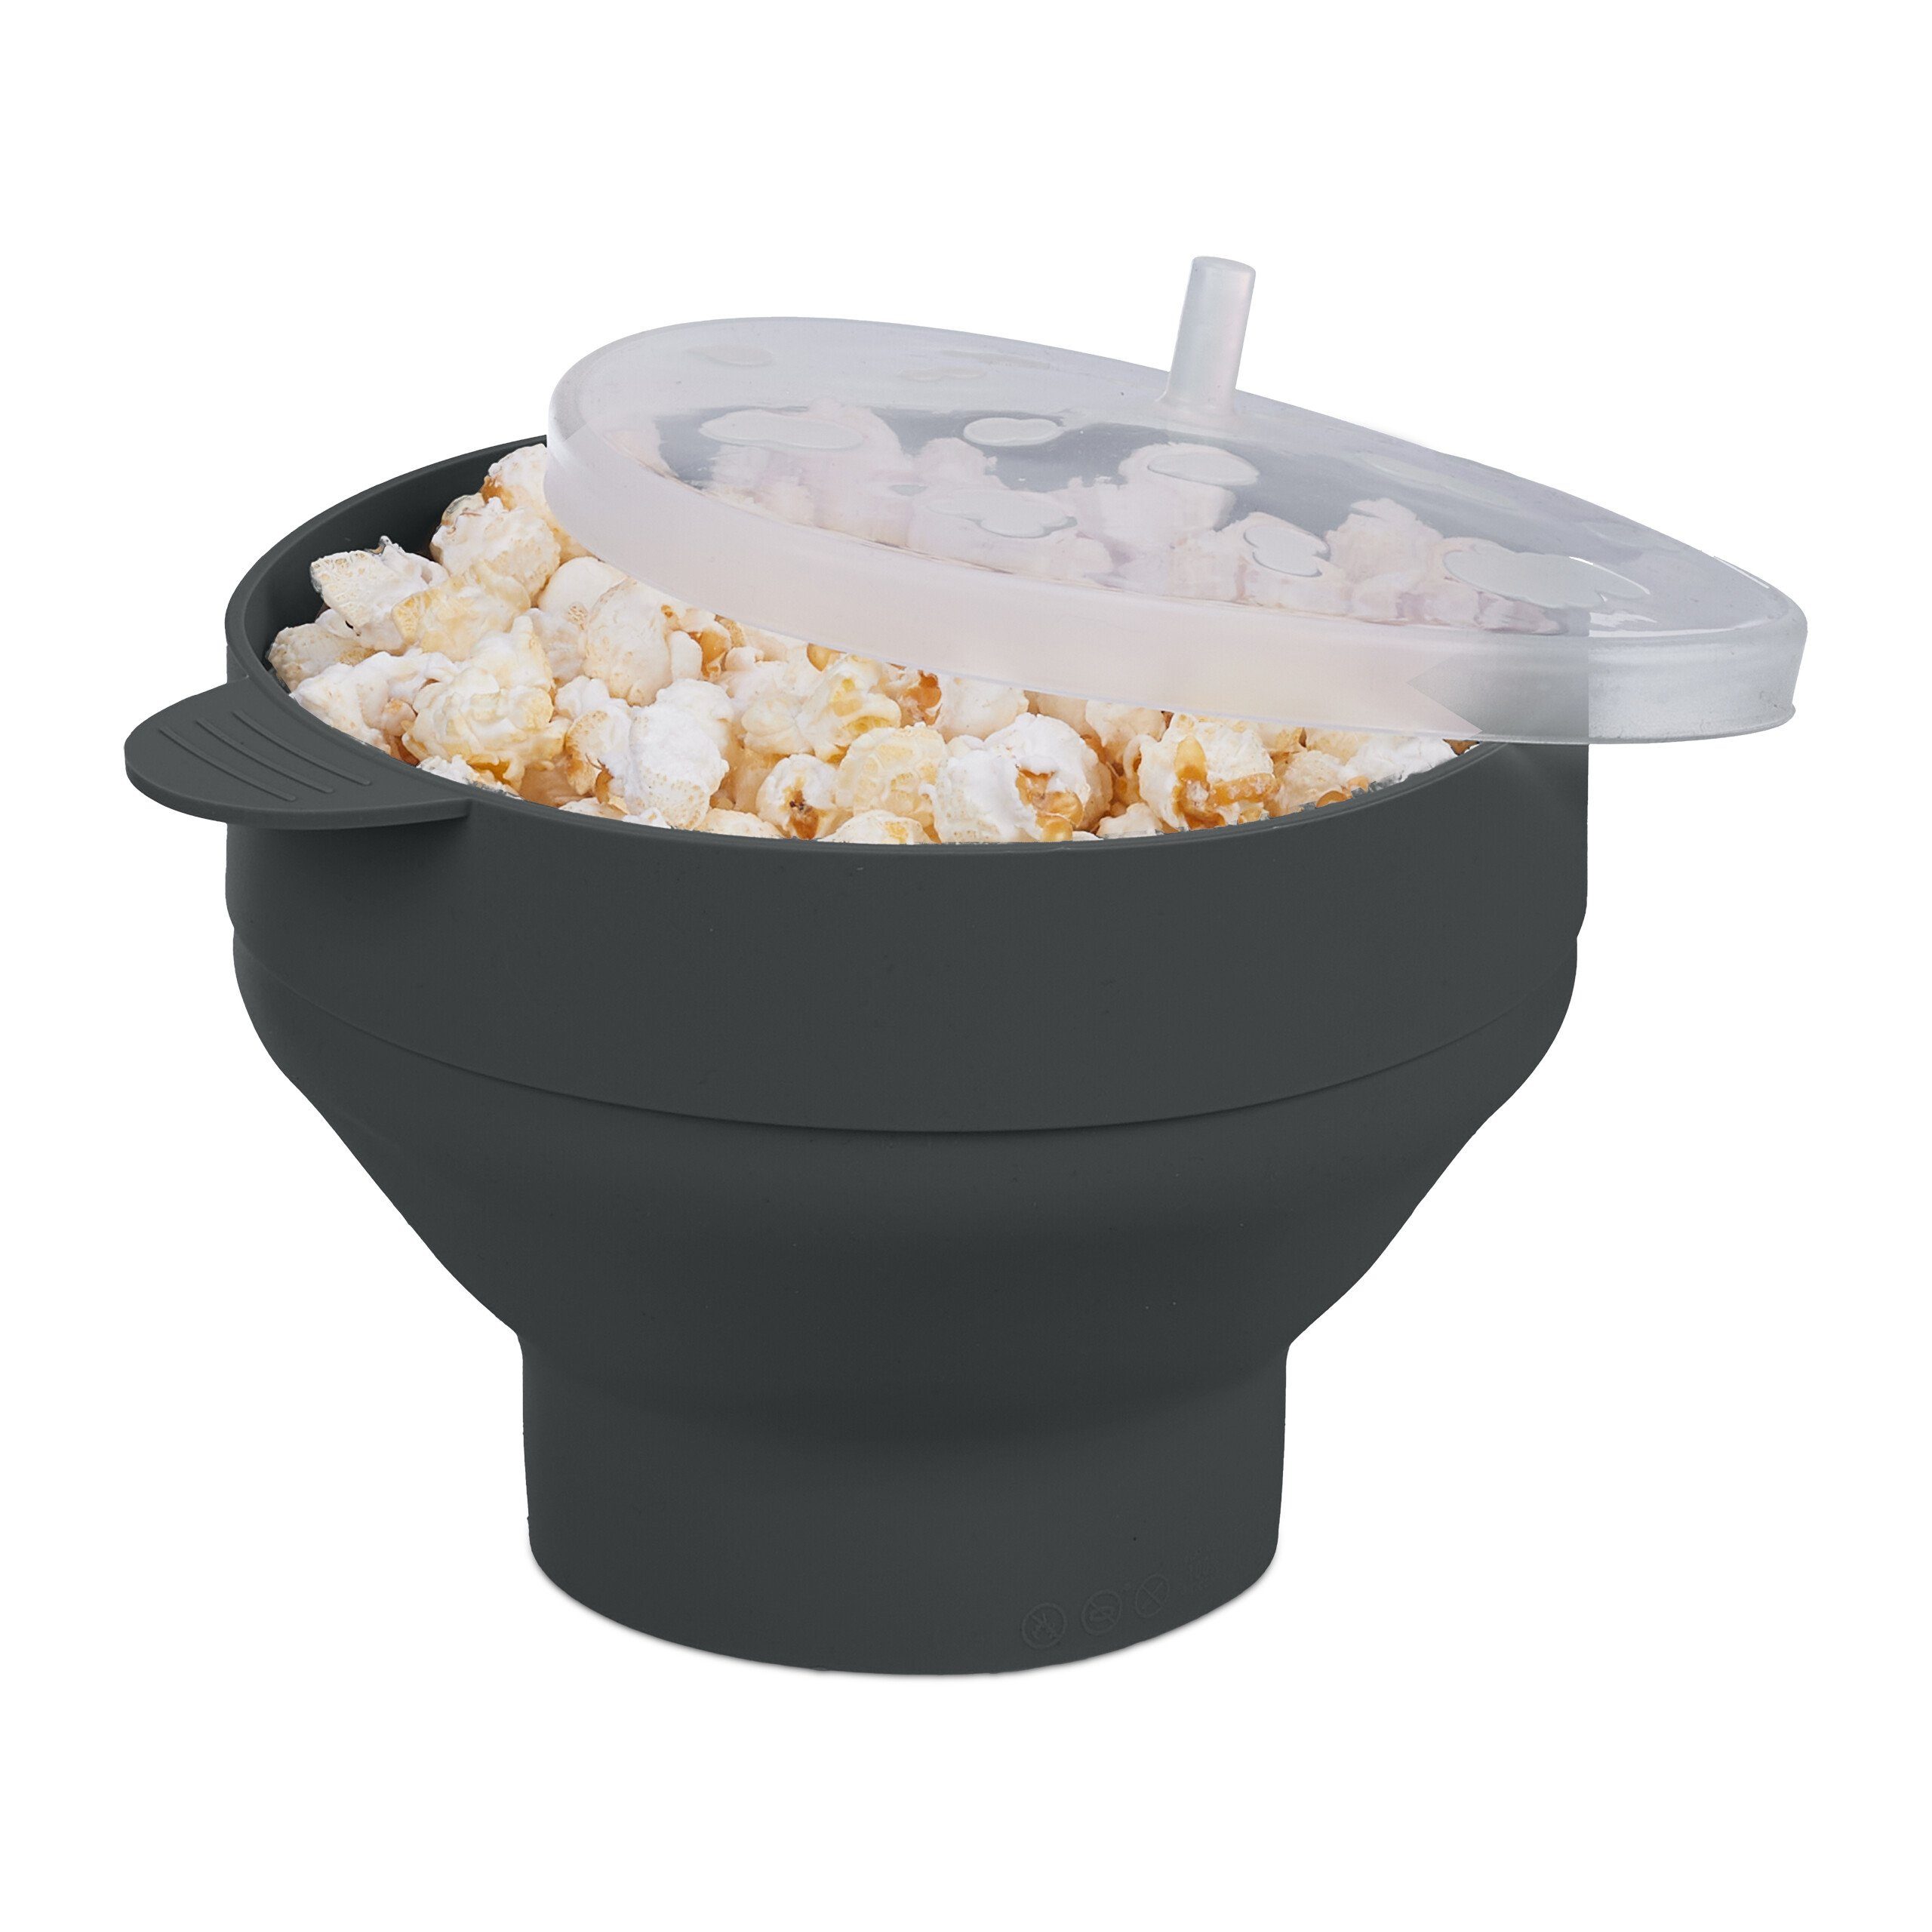 relaxdays Schüssel Popcorn Maker für Mikrowelle, Silikon, Schwarz Schwarz Transparent | Schüsseln